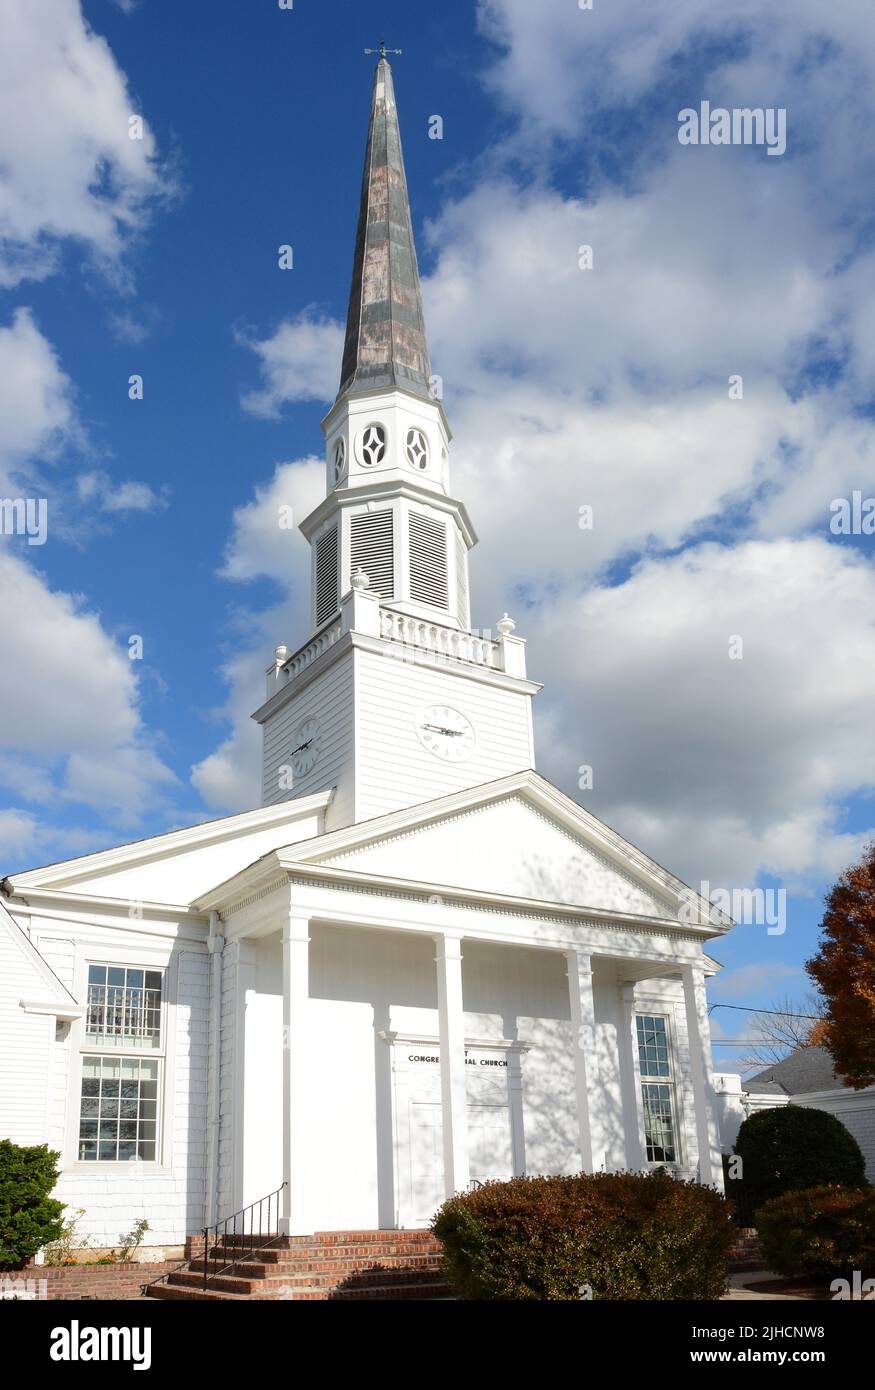 WESTFIELD, Nueva Jersey - 02 NOV 2019: El primer signo de la Iglesia congregacional en la zona histórica del centro de Westfield. Foto de stock